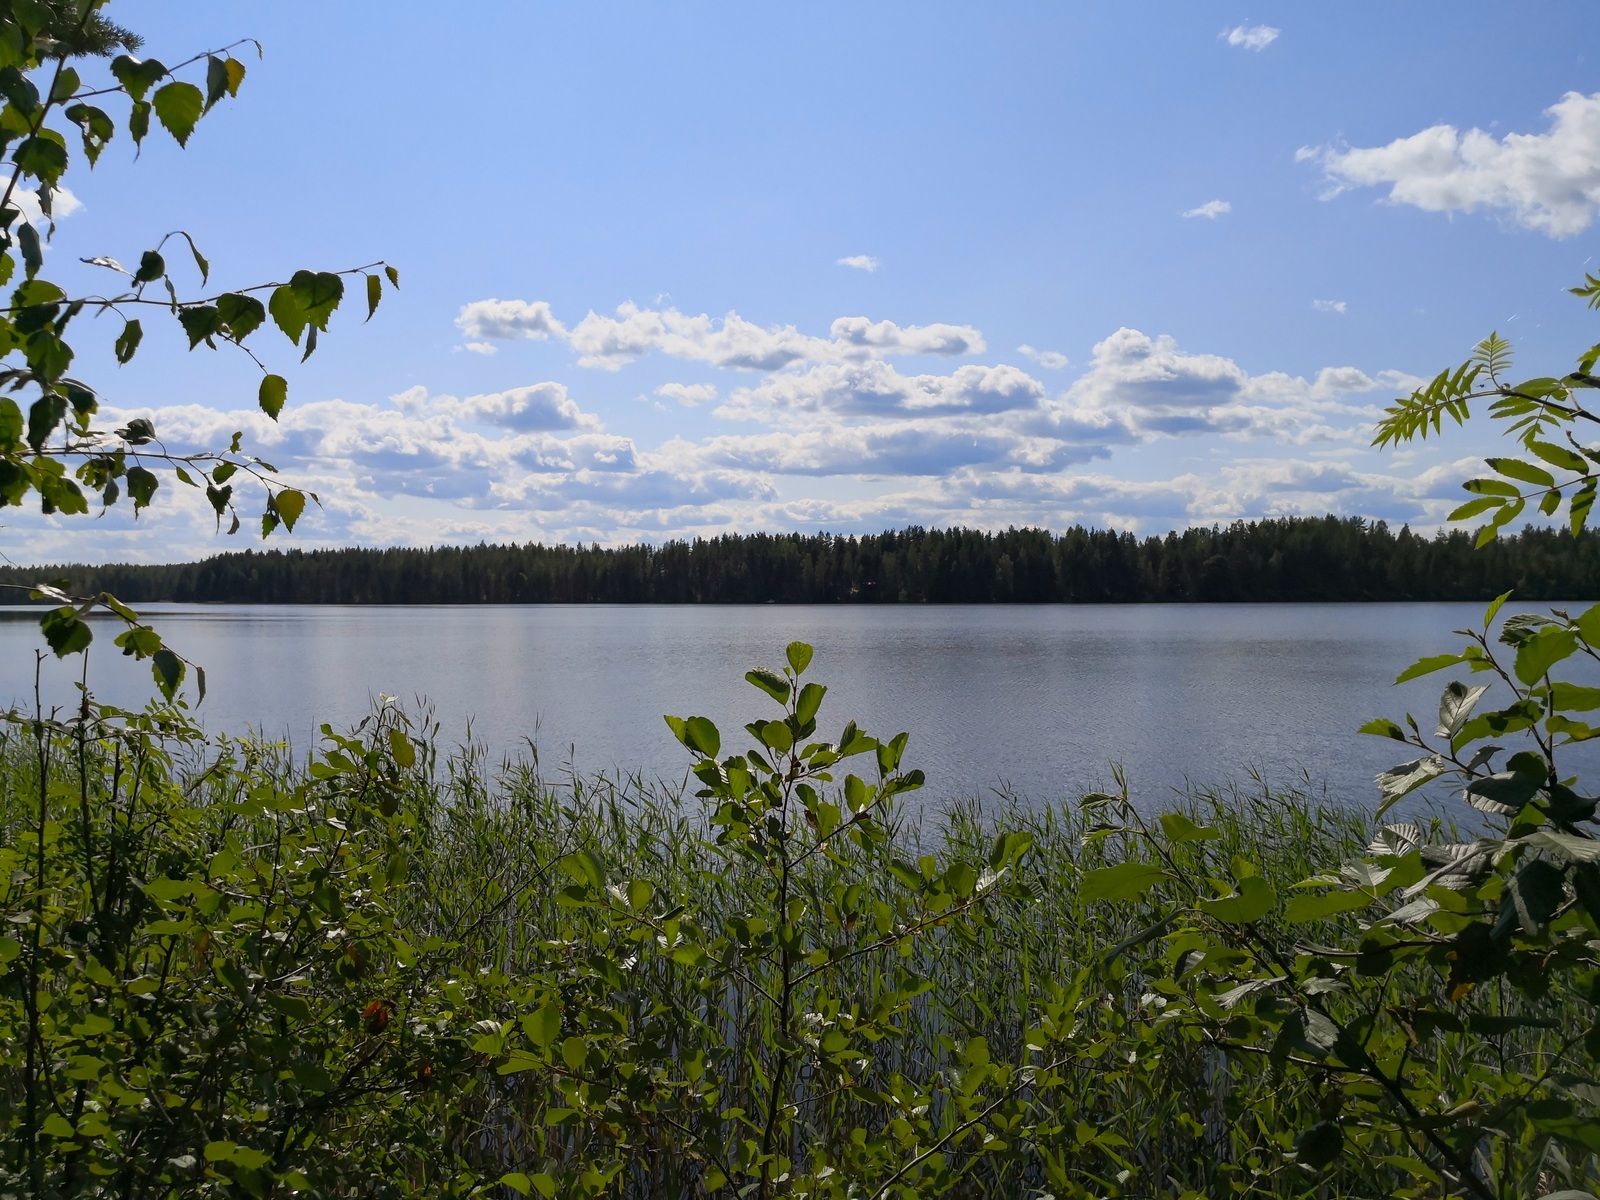 Lehtipuiden oksat reunustavat kesäistä järvimaisemaa. Taivaalla on poutapilviä lähellä horisonttia.